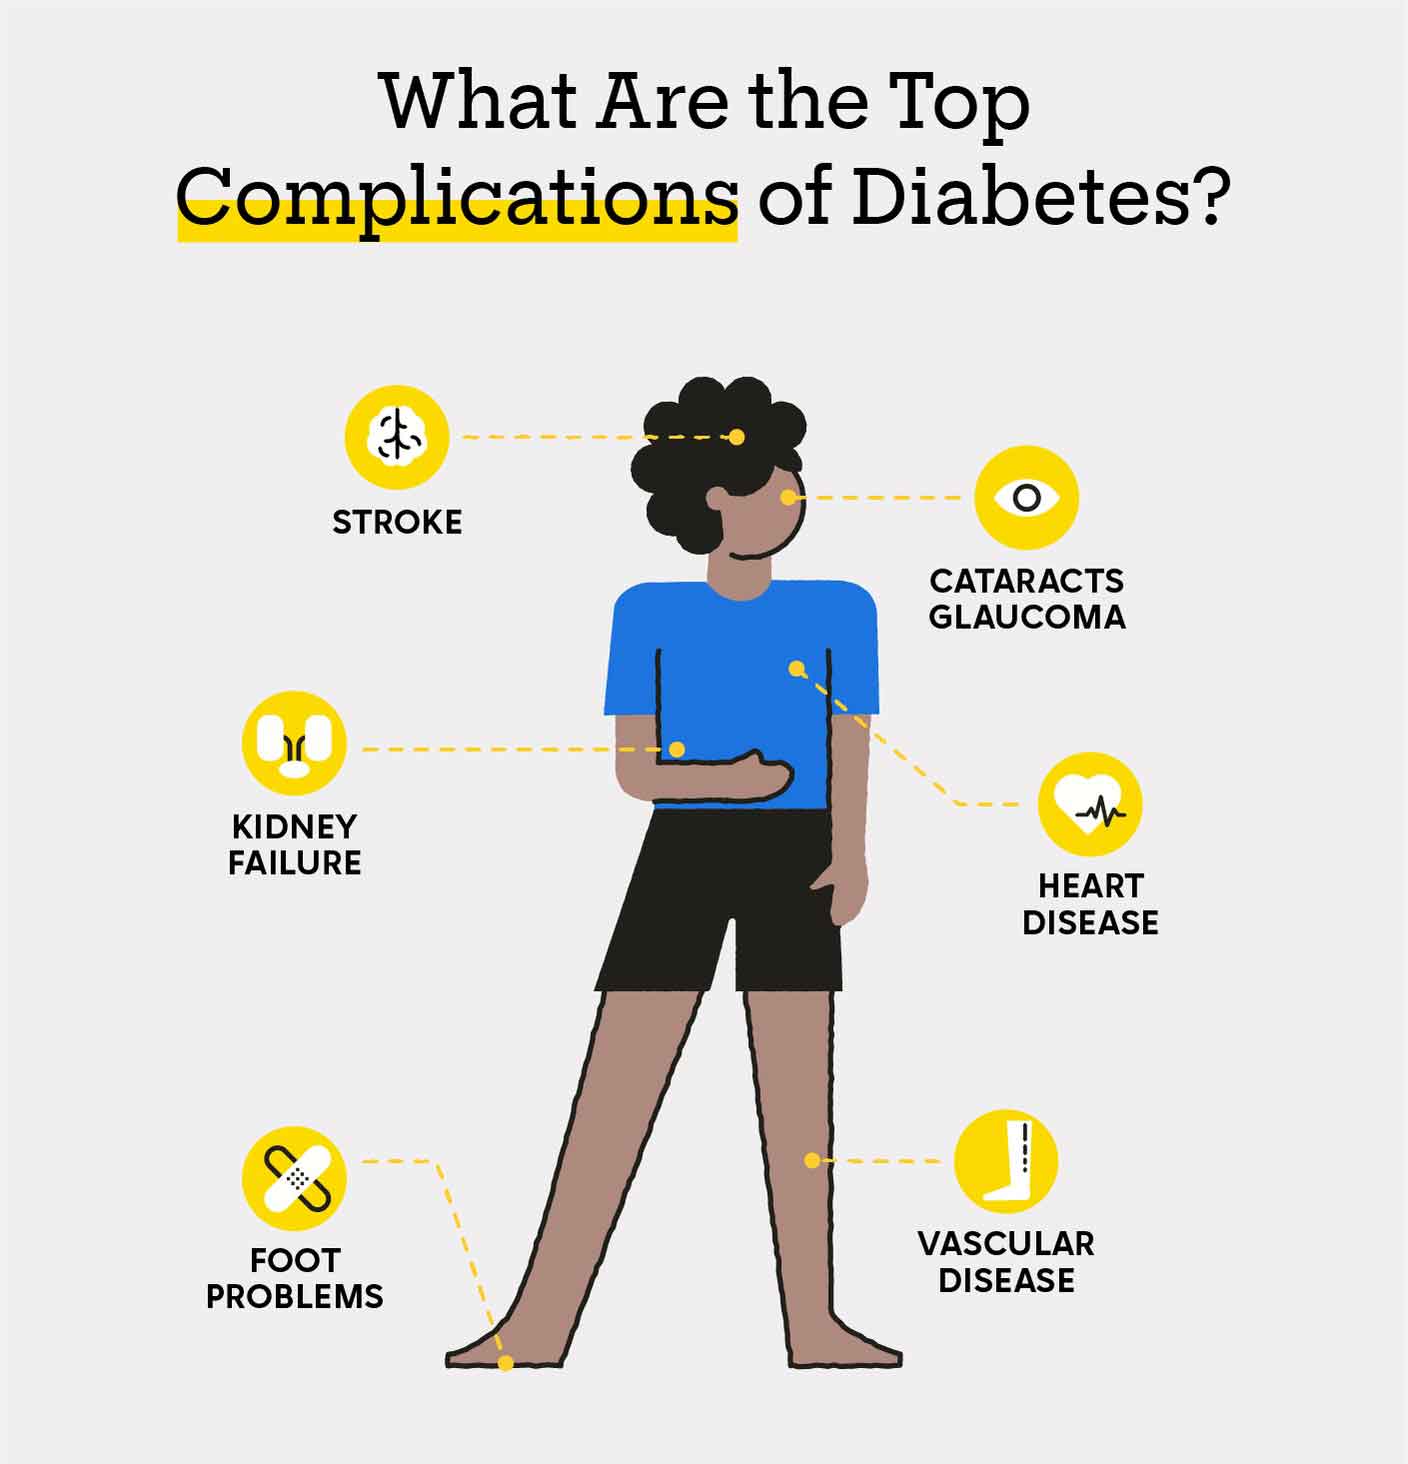 Diabetes complications - Foot Problems